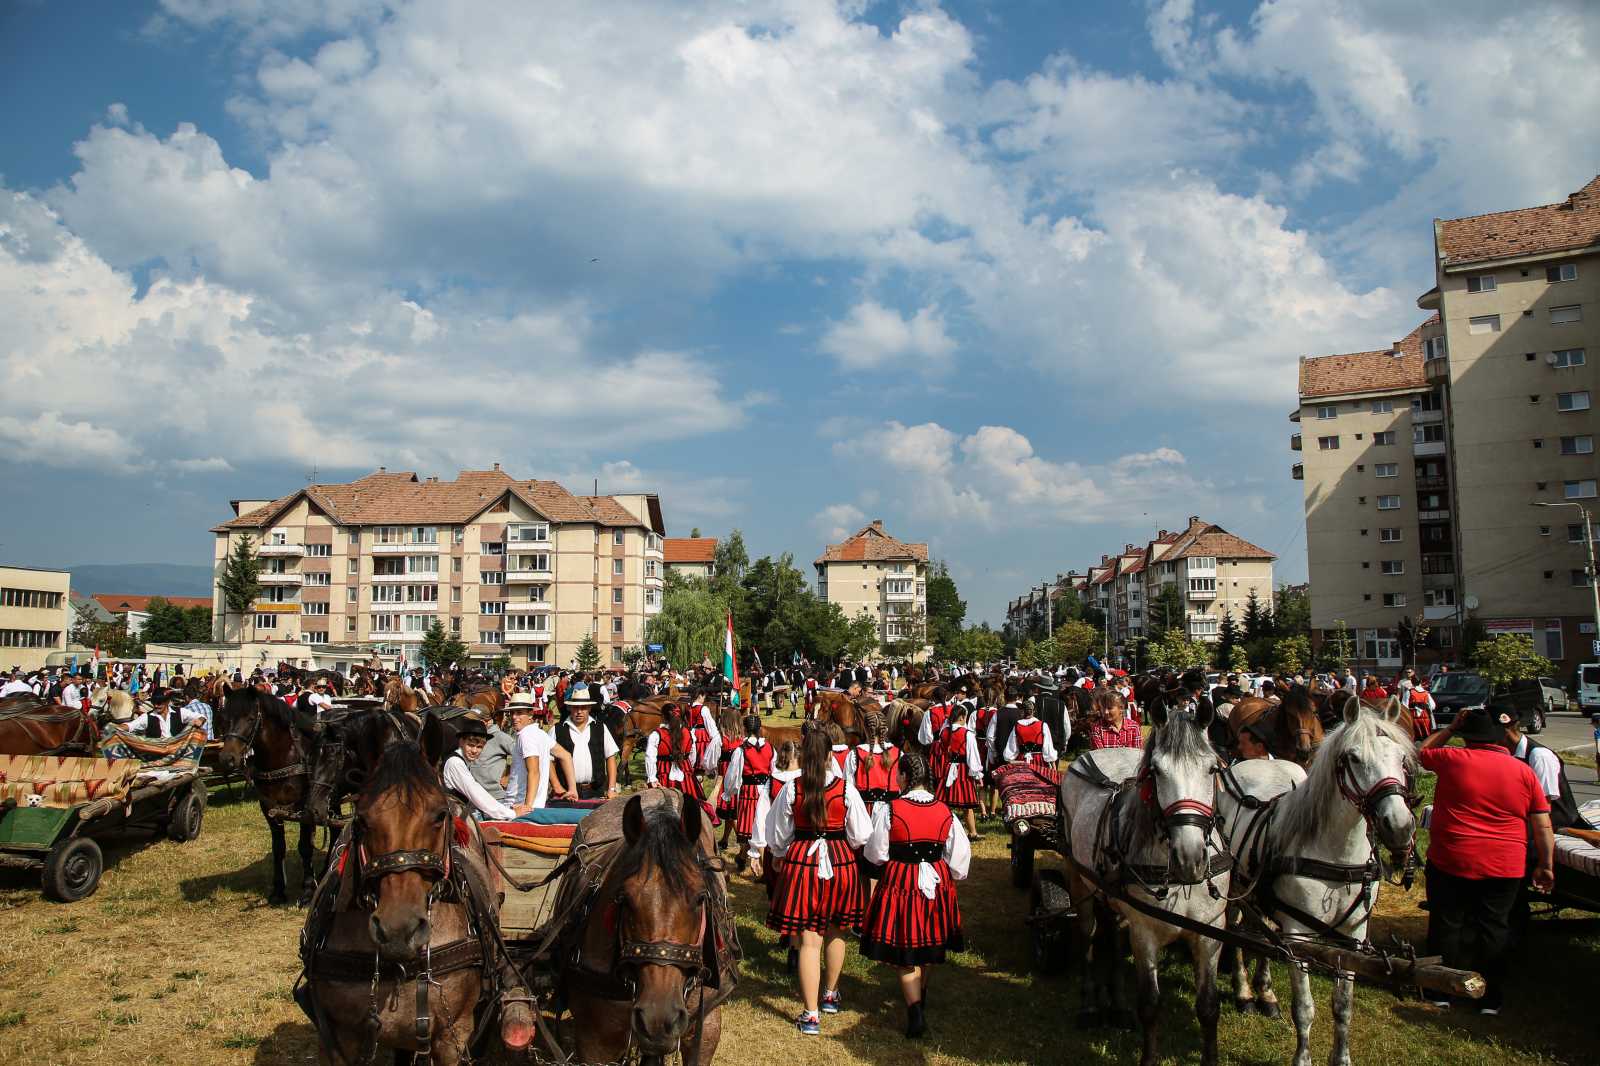 Végül csak nem maradt el a nagy népszerűségnek örvendő lovas és szekeres felvonulás, a települések szerint rendeződő csoportok Csíkszereda központjából indultak Csíksomlyóra.